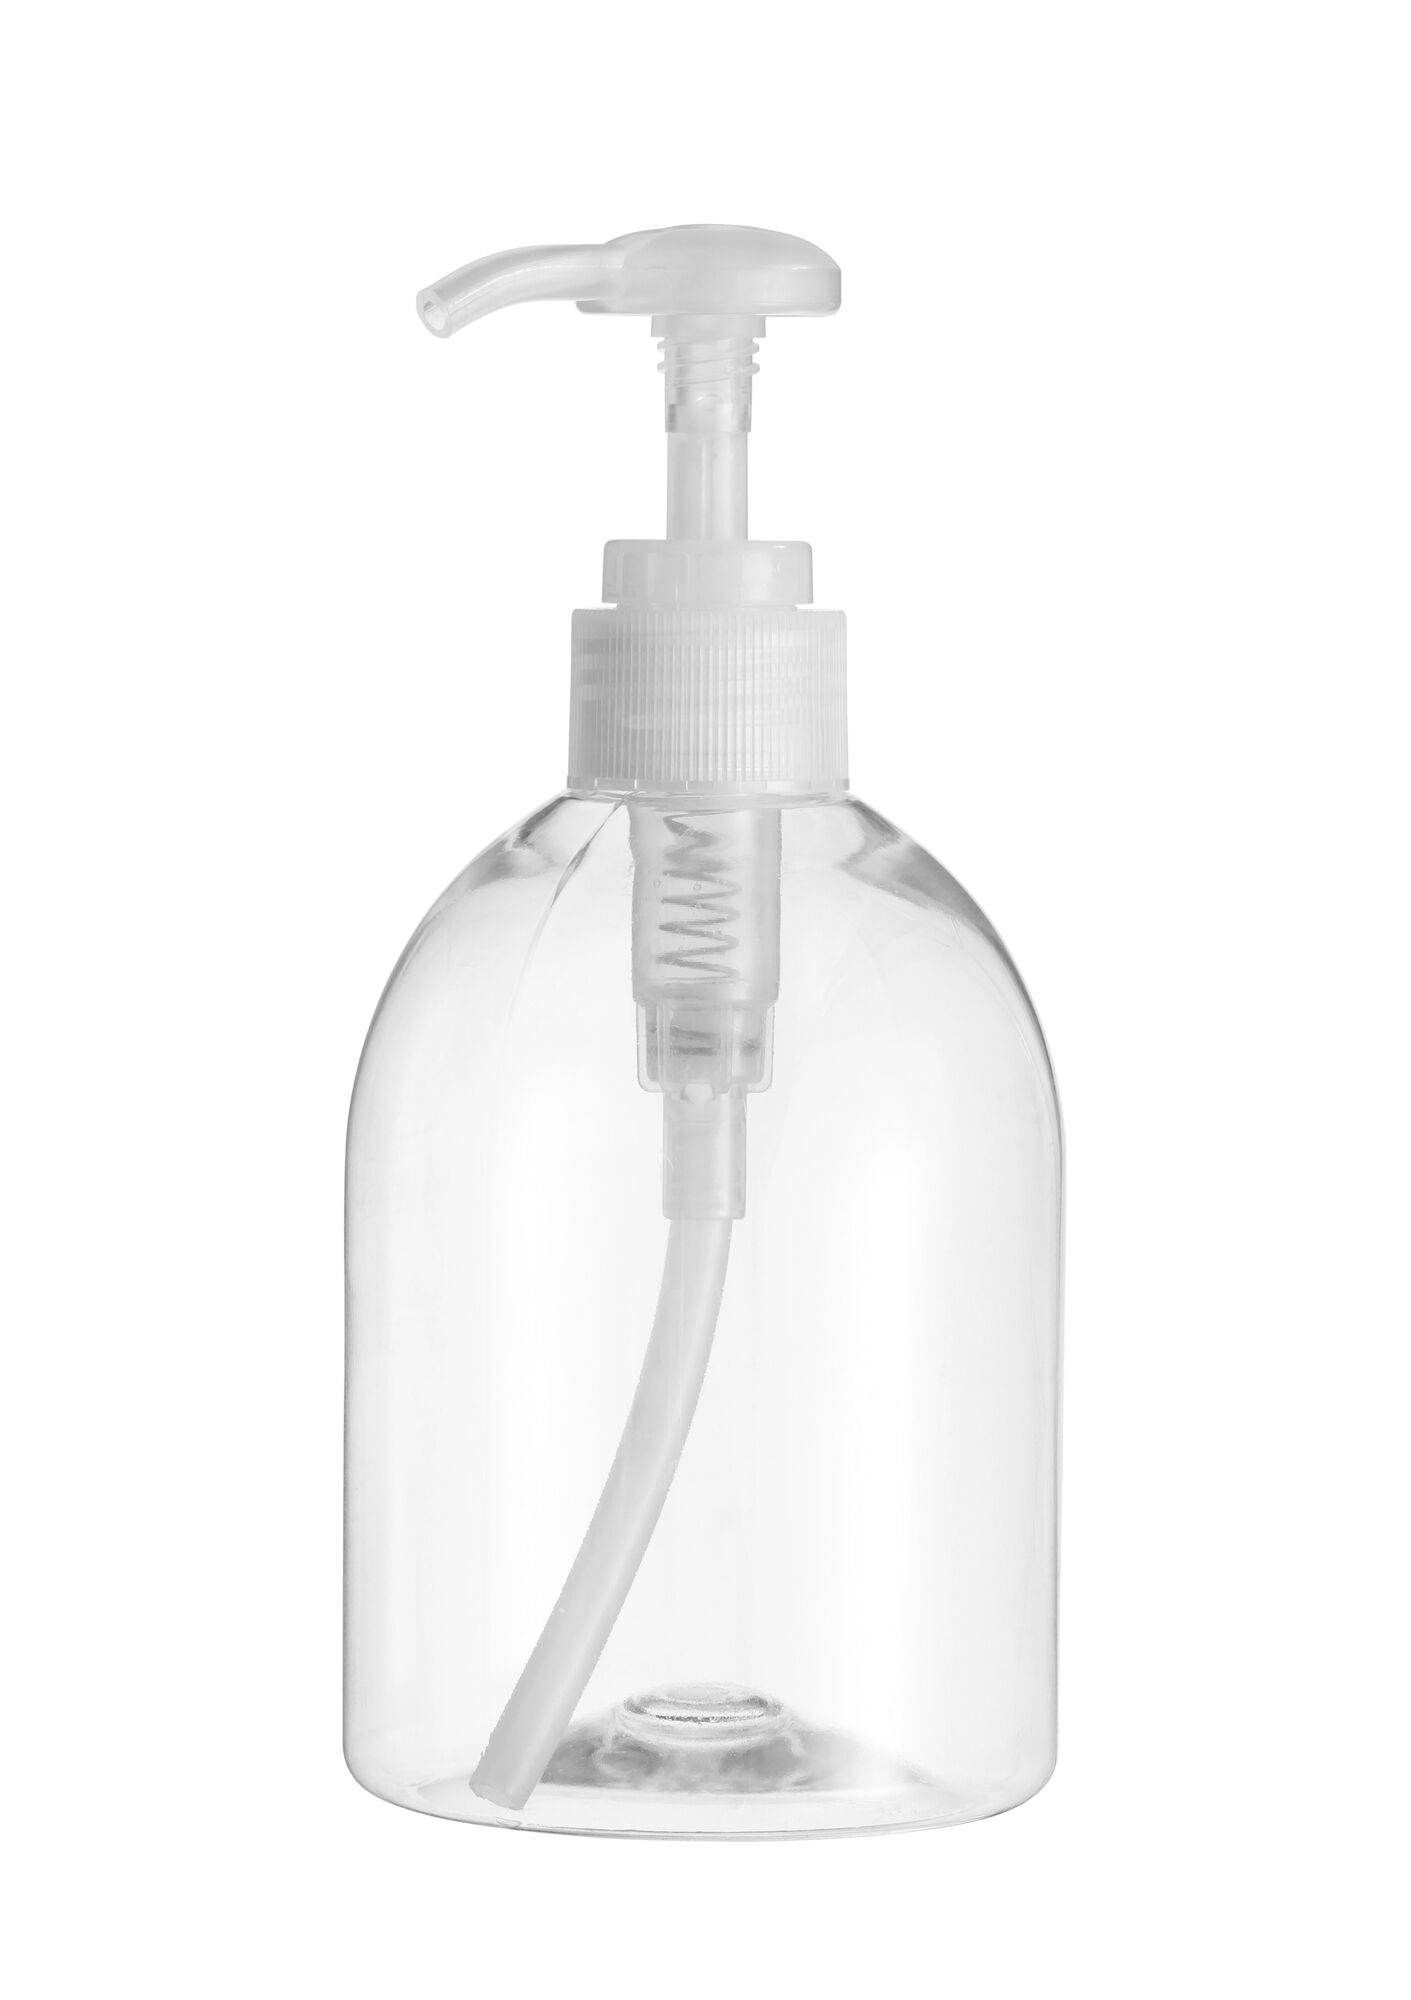 Дозатор локтевой для антисептика и жидкого мыла ДНЛ-01 настенный (пласт курок в комплекте) 116